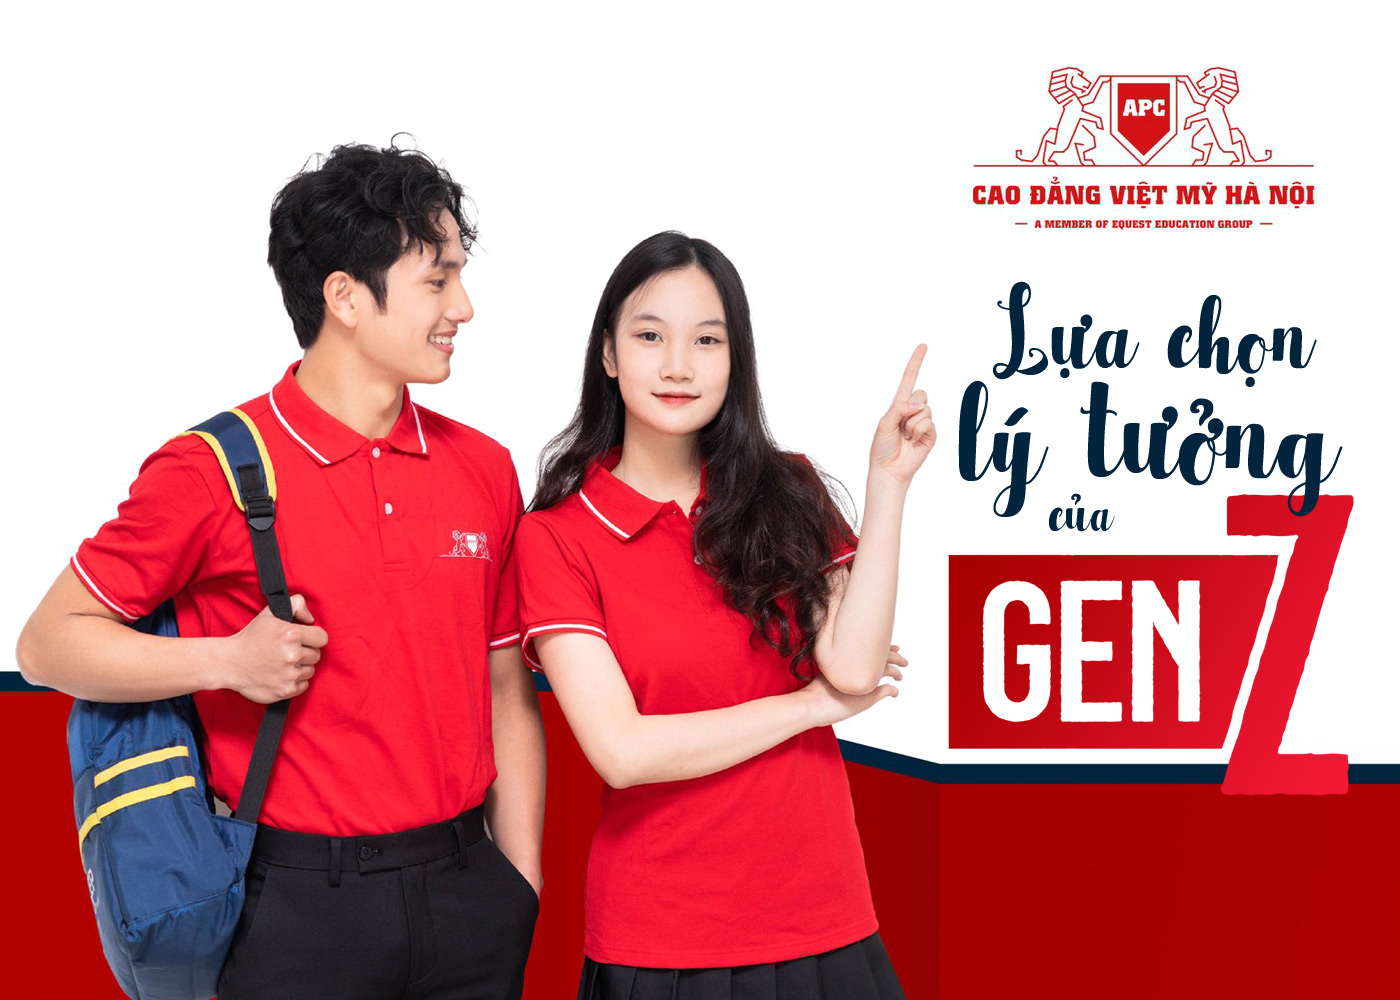 Cao đẳng Việt Mỹ Hà Nội - lựa chọn lý tưởng của Gen Z - Ảnh 1